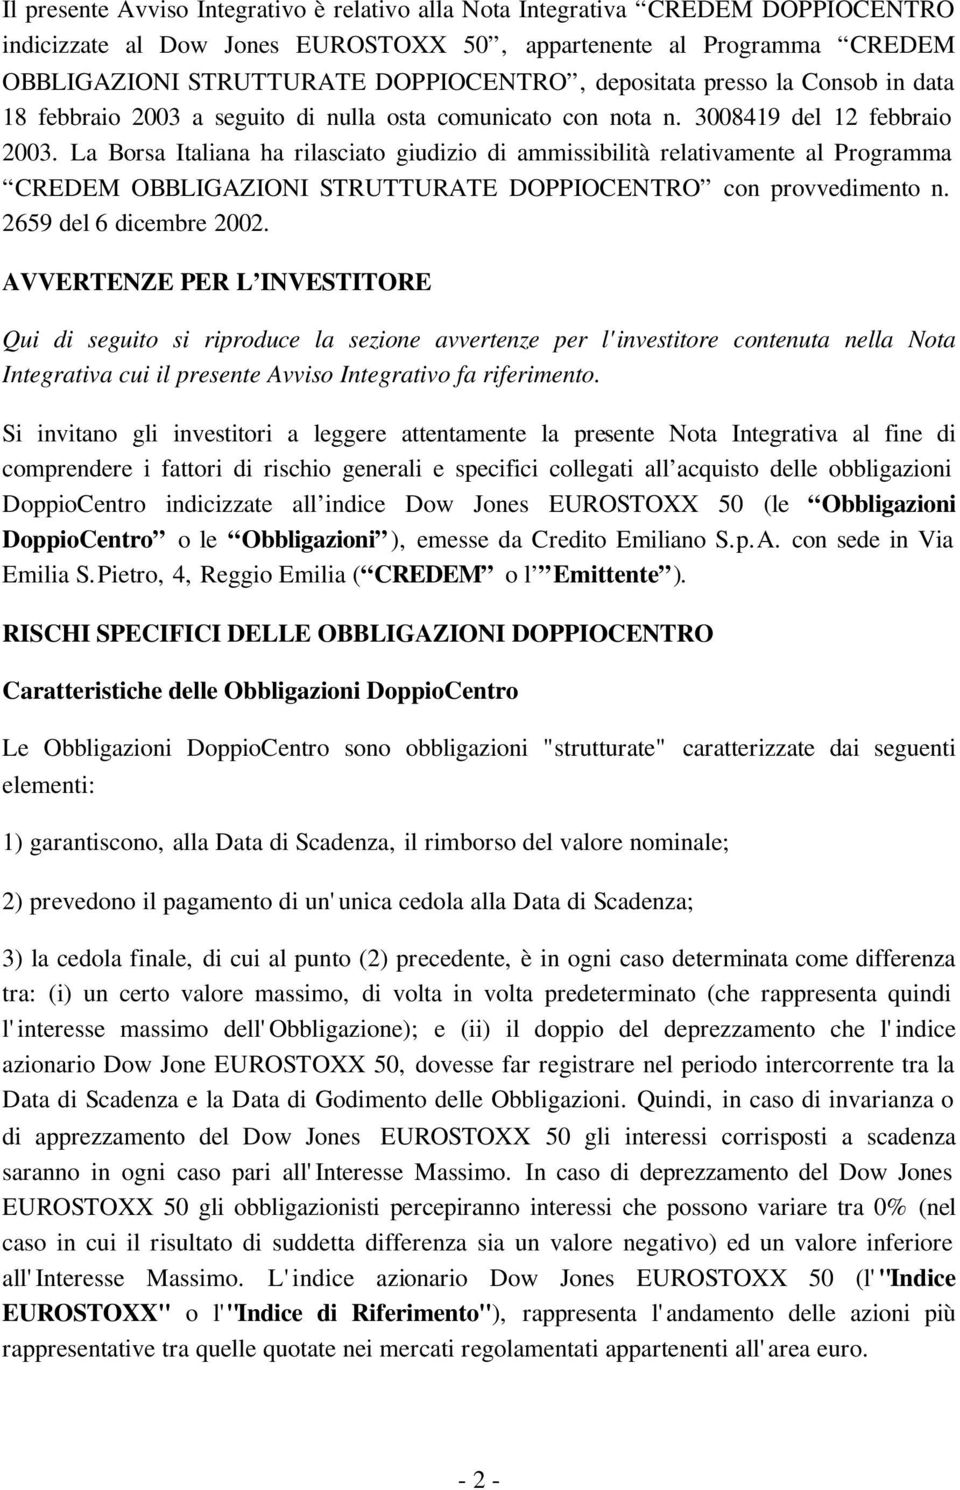 La Borsa Italiana ha rilasciato giudizio di ammissibilità relativamente al Programma CREDEM OBBLIGAZIONI STRUTTURATE DOPPIOCENTRO con provvedimento n. 2659 del 6 dicembre 2002.